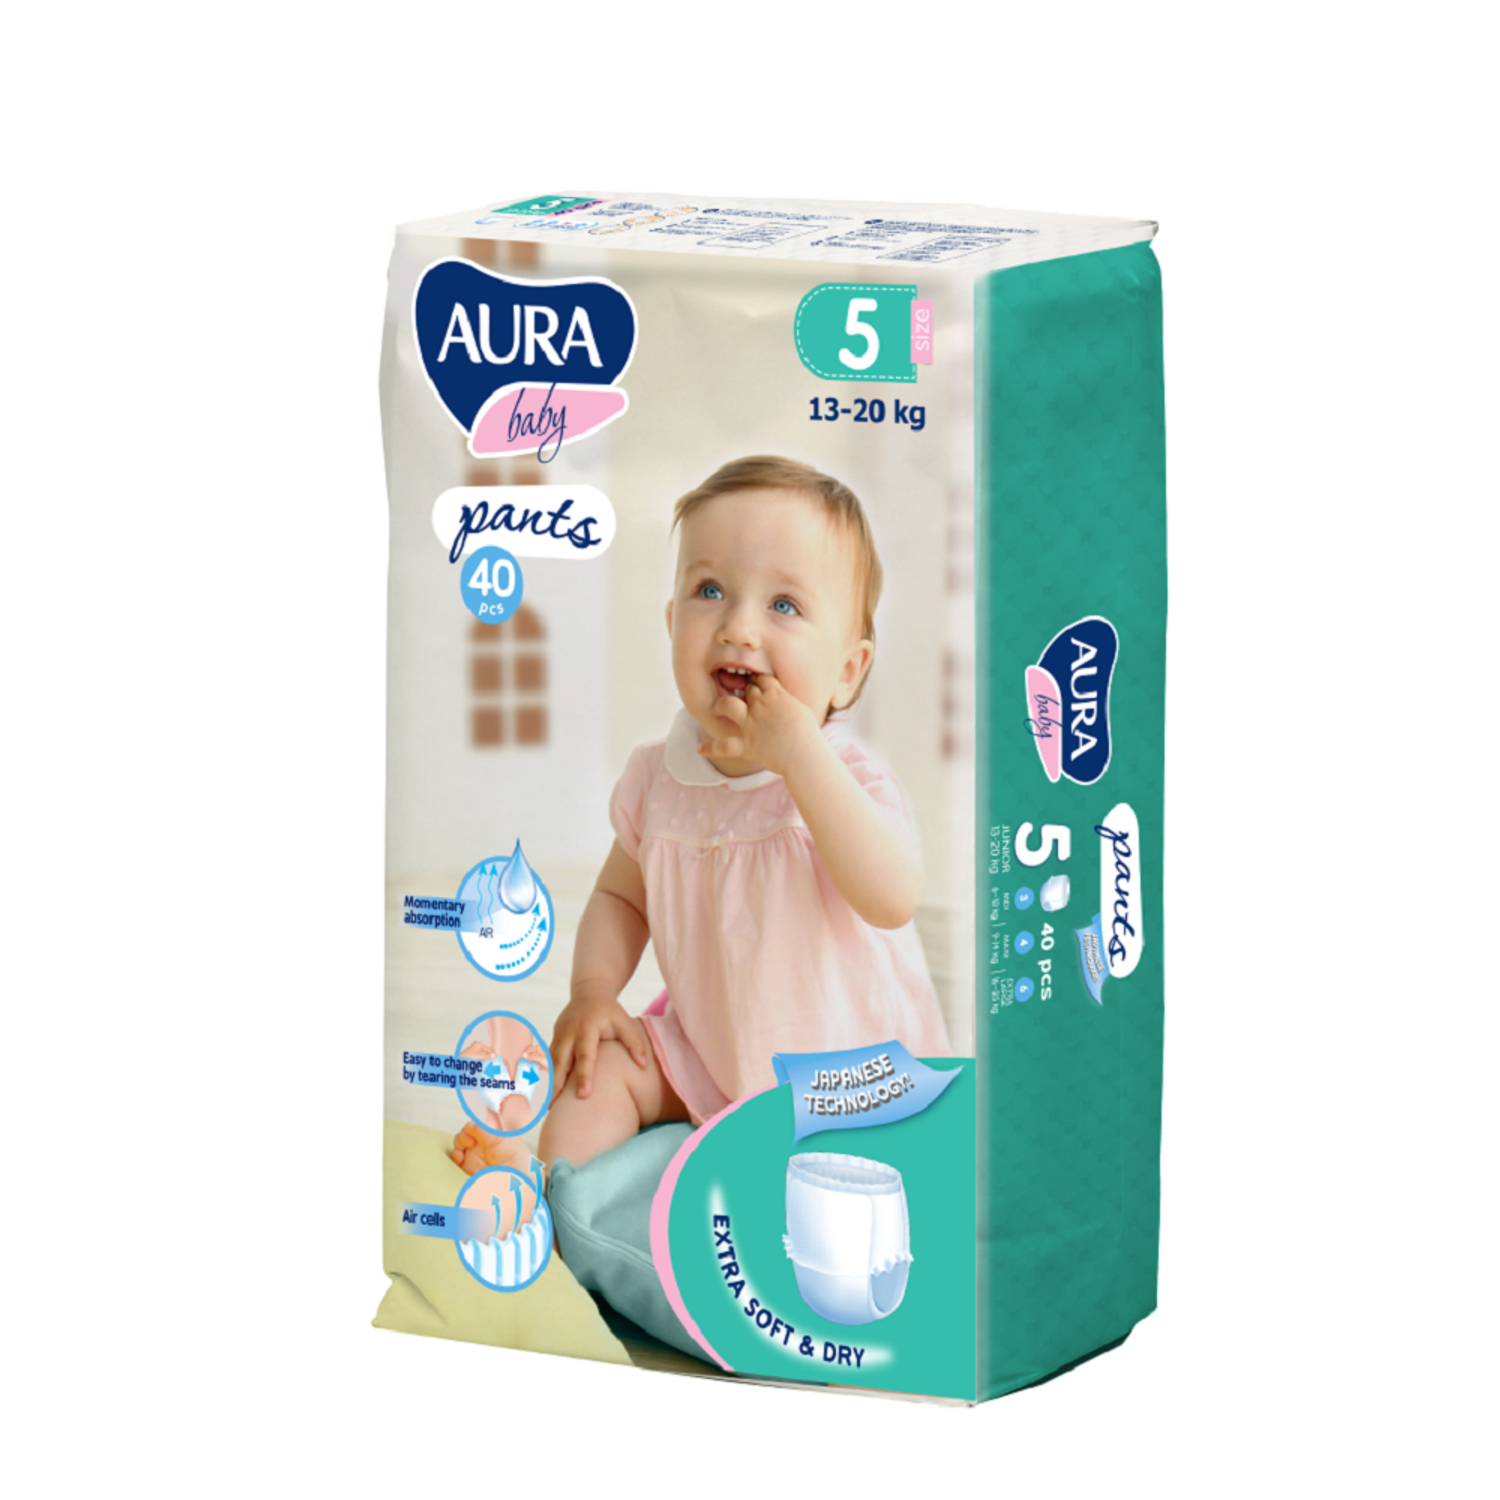 Подгузники-трусики AURA BABY одноразовые для детей 5/XL 13-20 кг jambo-pack 40шт - фото 1